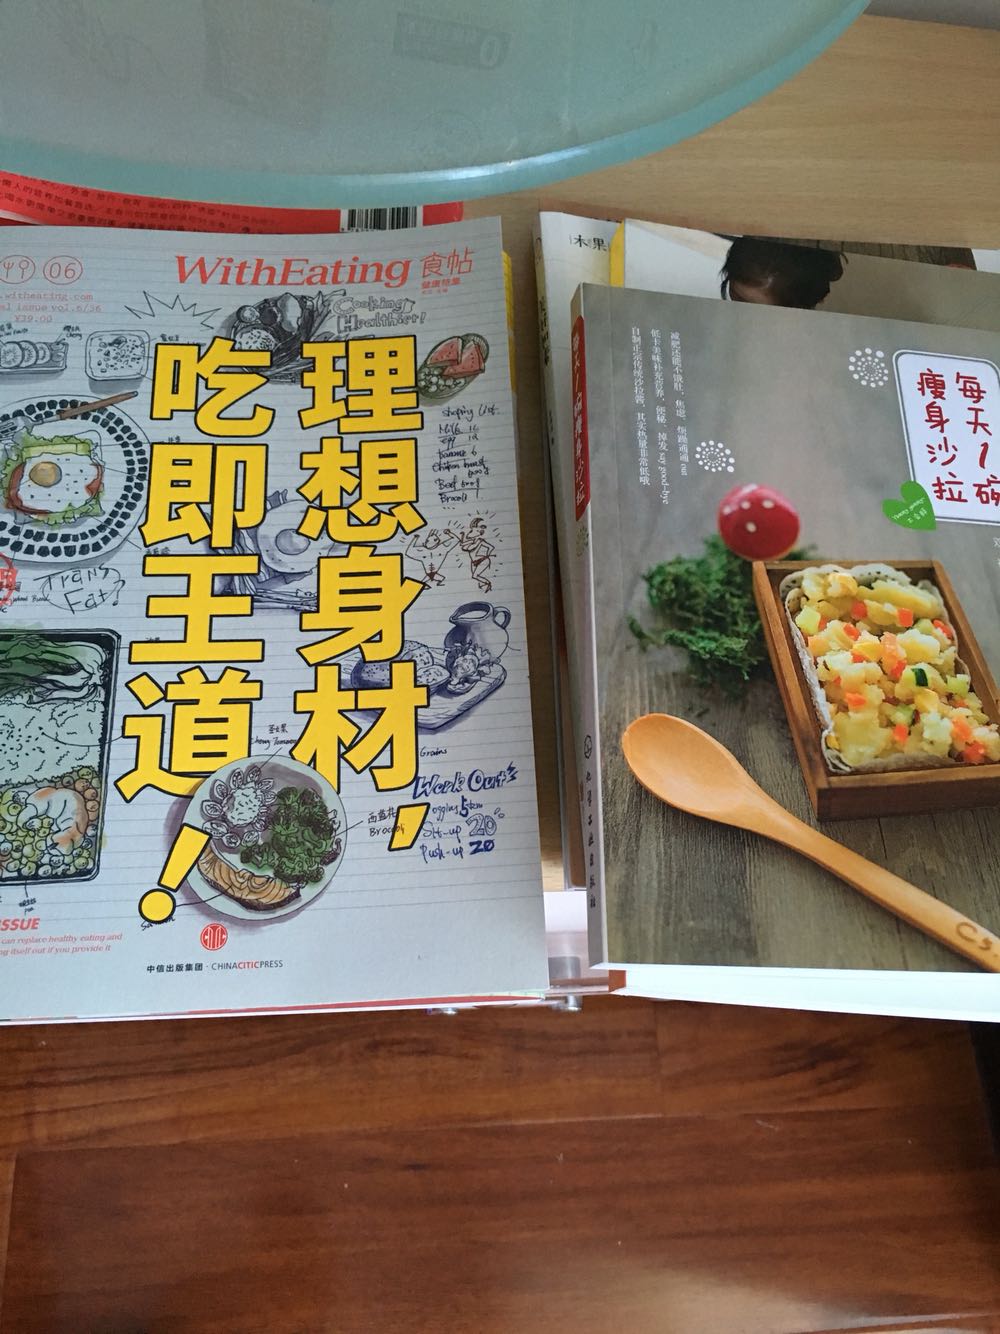 此书买来想学些做面包的理论，还没有看，应该可以满足愿望，日本人写的东西还是很细致的，从家里买的烘焙用具就可以看出来品质，国产的根本没法比呀！